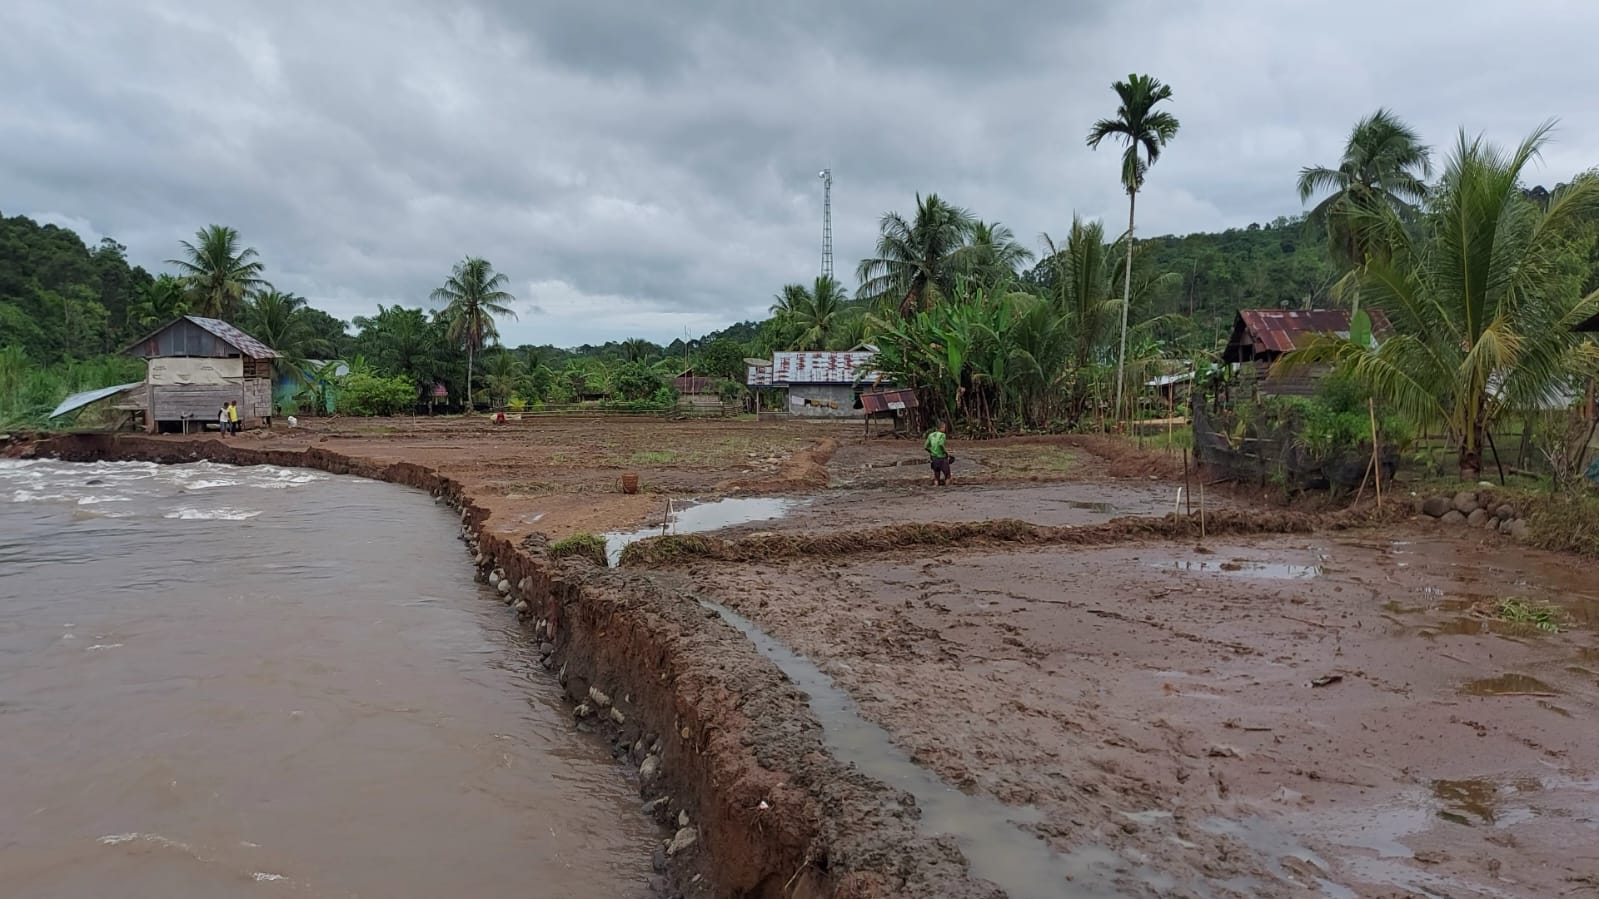 Pasca Banjir, Desa Rindu Hati Terancam Hanyut